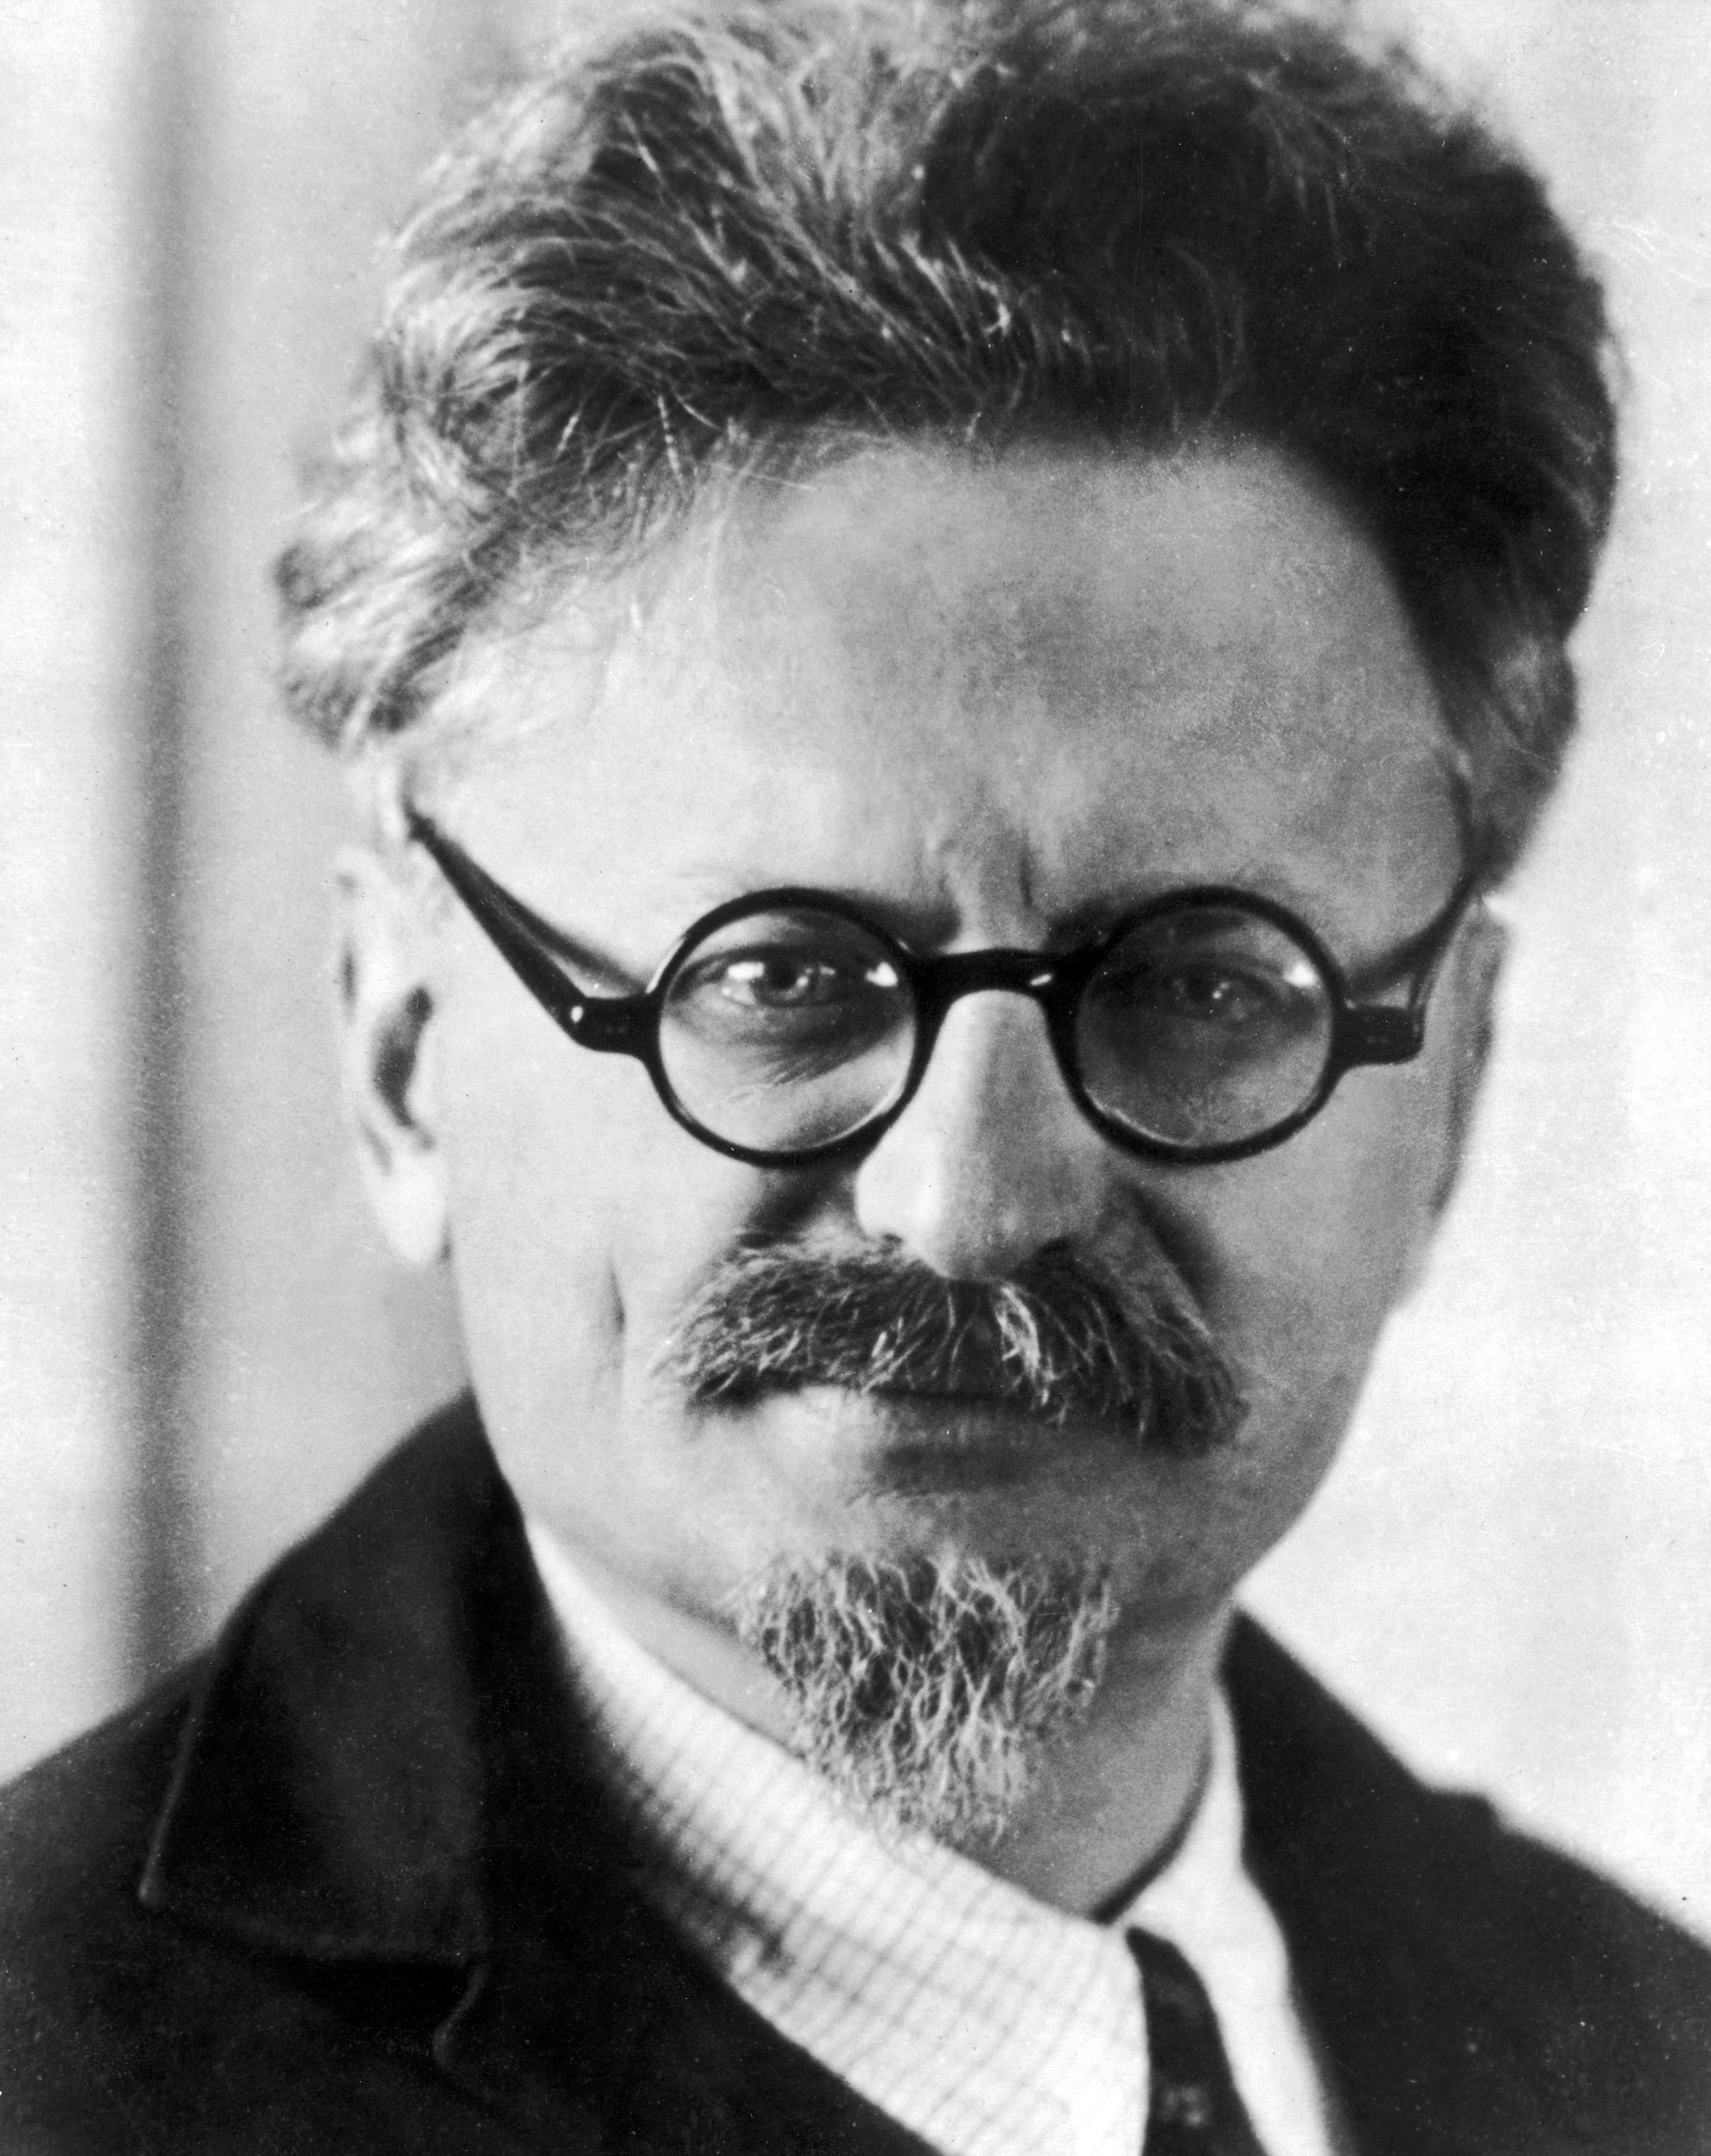 Leon Trotsky 1930s Image public domain